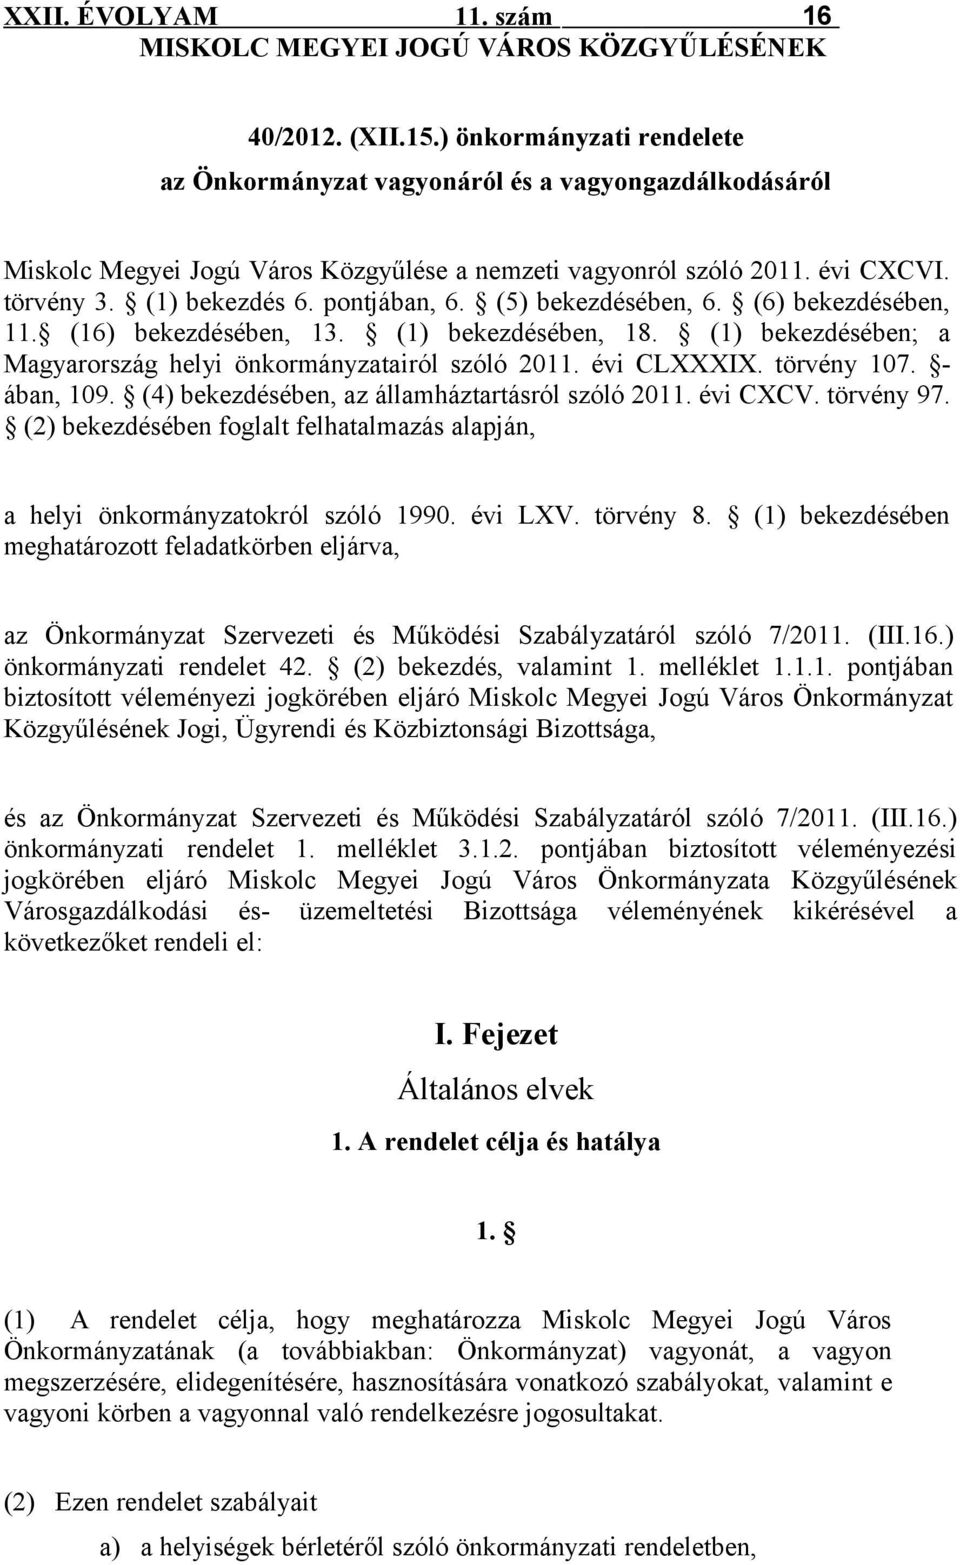 (5) bekezdésében, 6. (6) bekezdésében, 11. (16) bekezdésében, 13. (1) bekezdésében, 18. (1) bekezdésében; a Magyarország helyi önkormányzatairól szóló 2011. évi CLXXXIX. törvény 107. ában, 109.